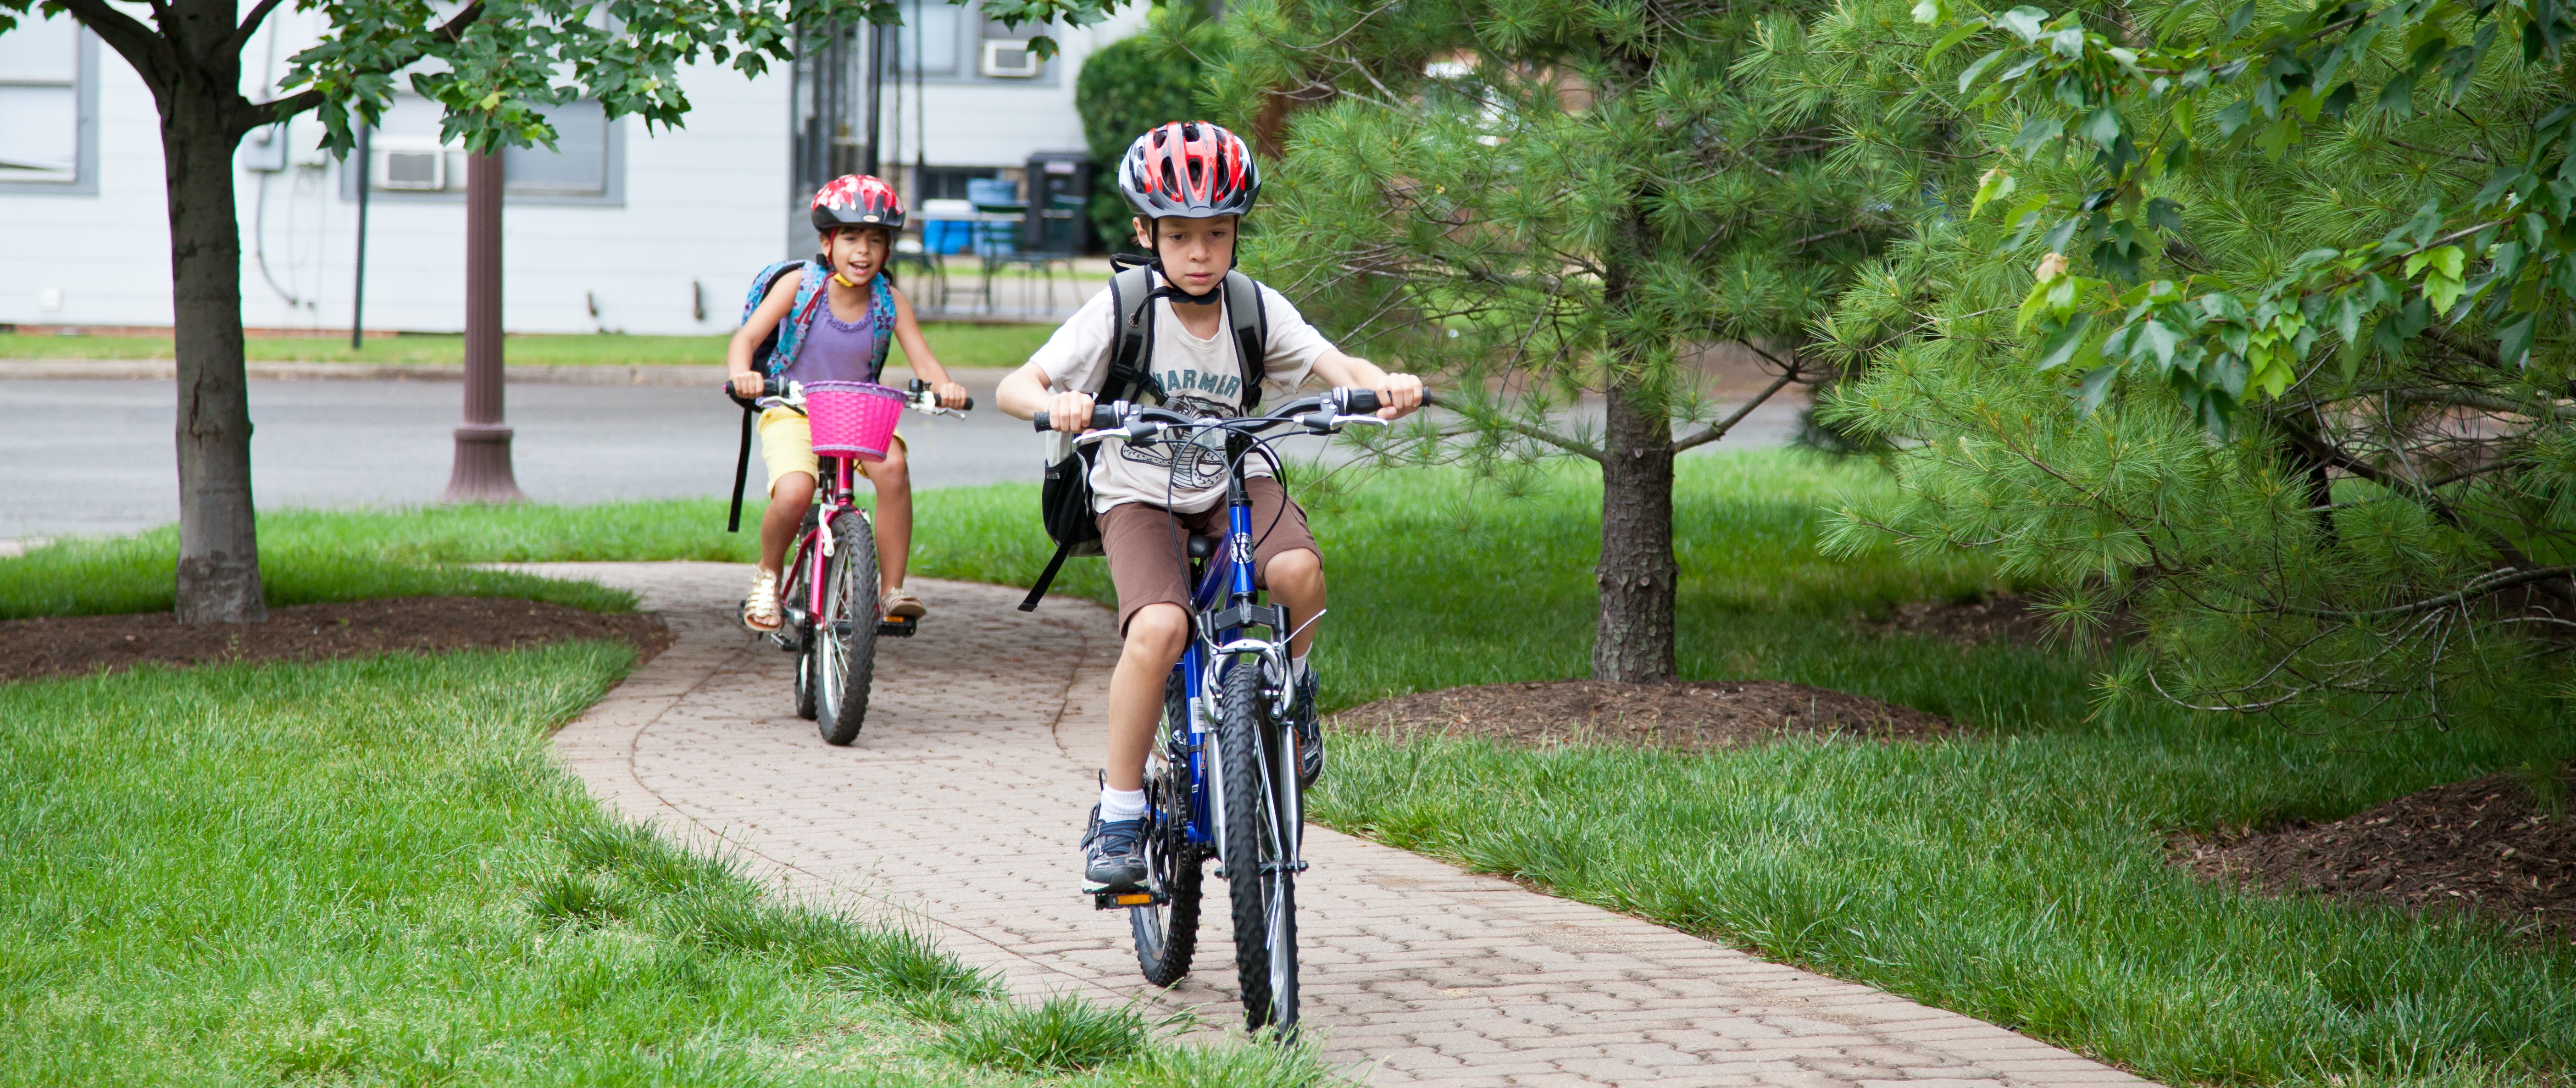 Можно ли по тротуару ездить на велосипеде. Дети катаются на велосипеде. Ребенок на велосипеде на дороге. Юный велосипедист. Дети на велосипеде в городе.